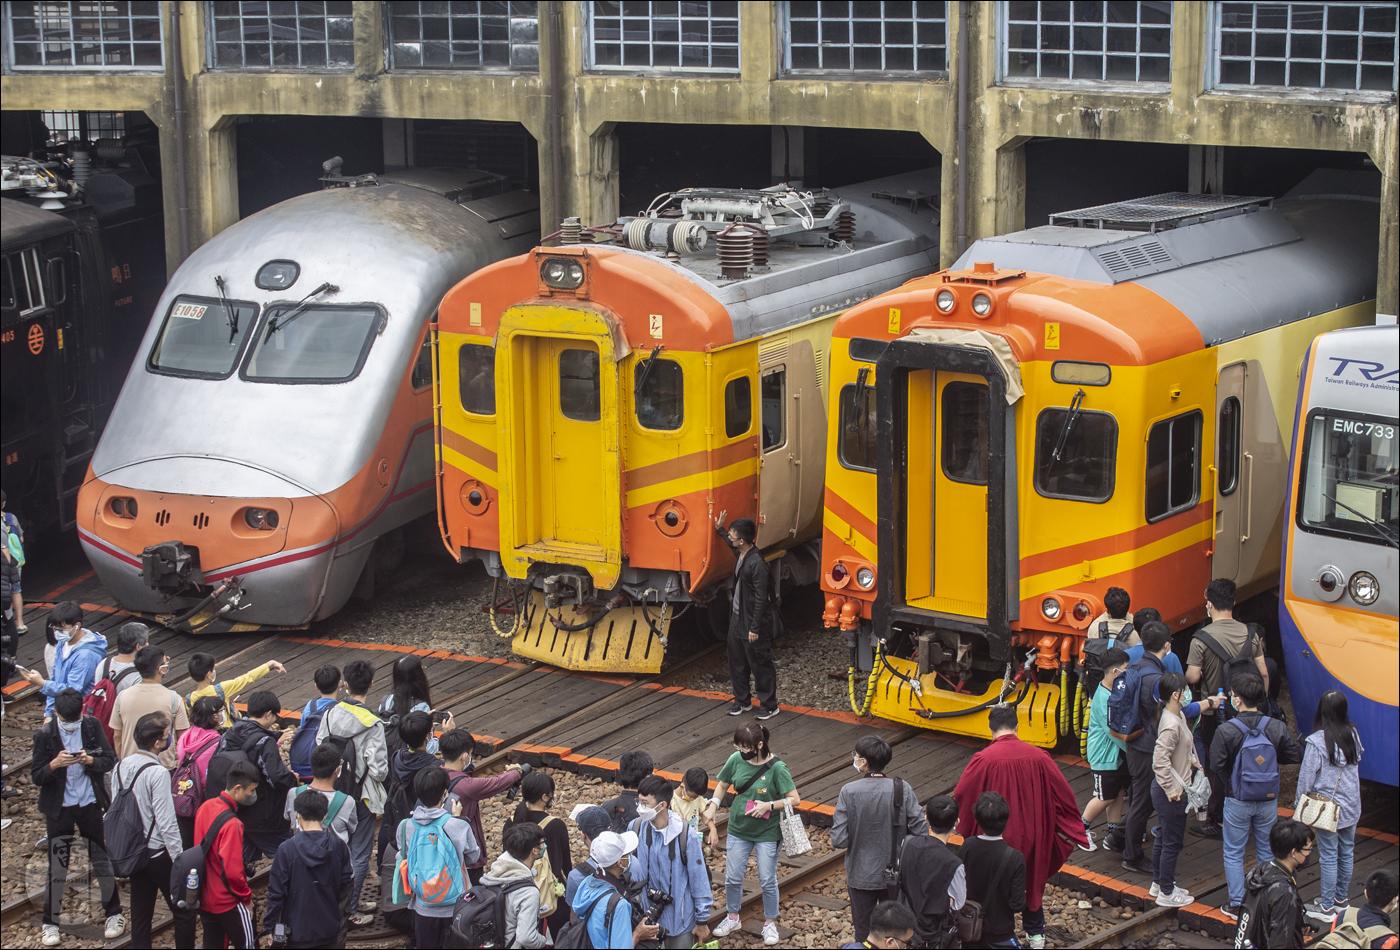 E1000-es, EMU100-as és EMU300-as sorozatú motorvonatok. A tajvani nagysebességű vasút elkészülte előtt e járművek jelentették a leggyorsabb összeköttetést Tajvan nagyvárosai között.